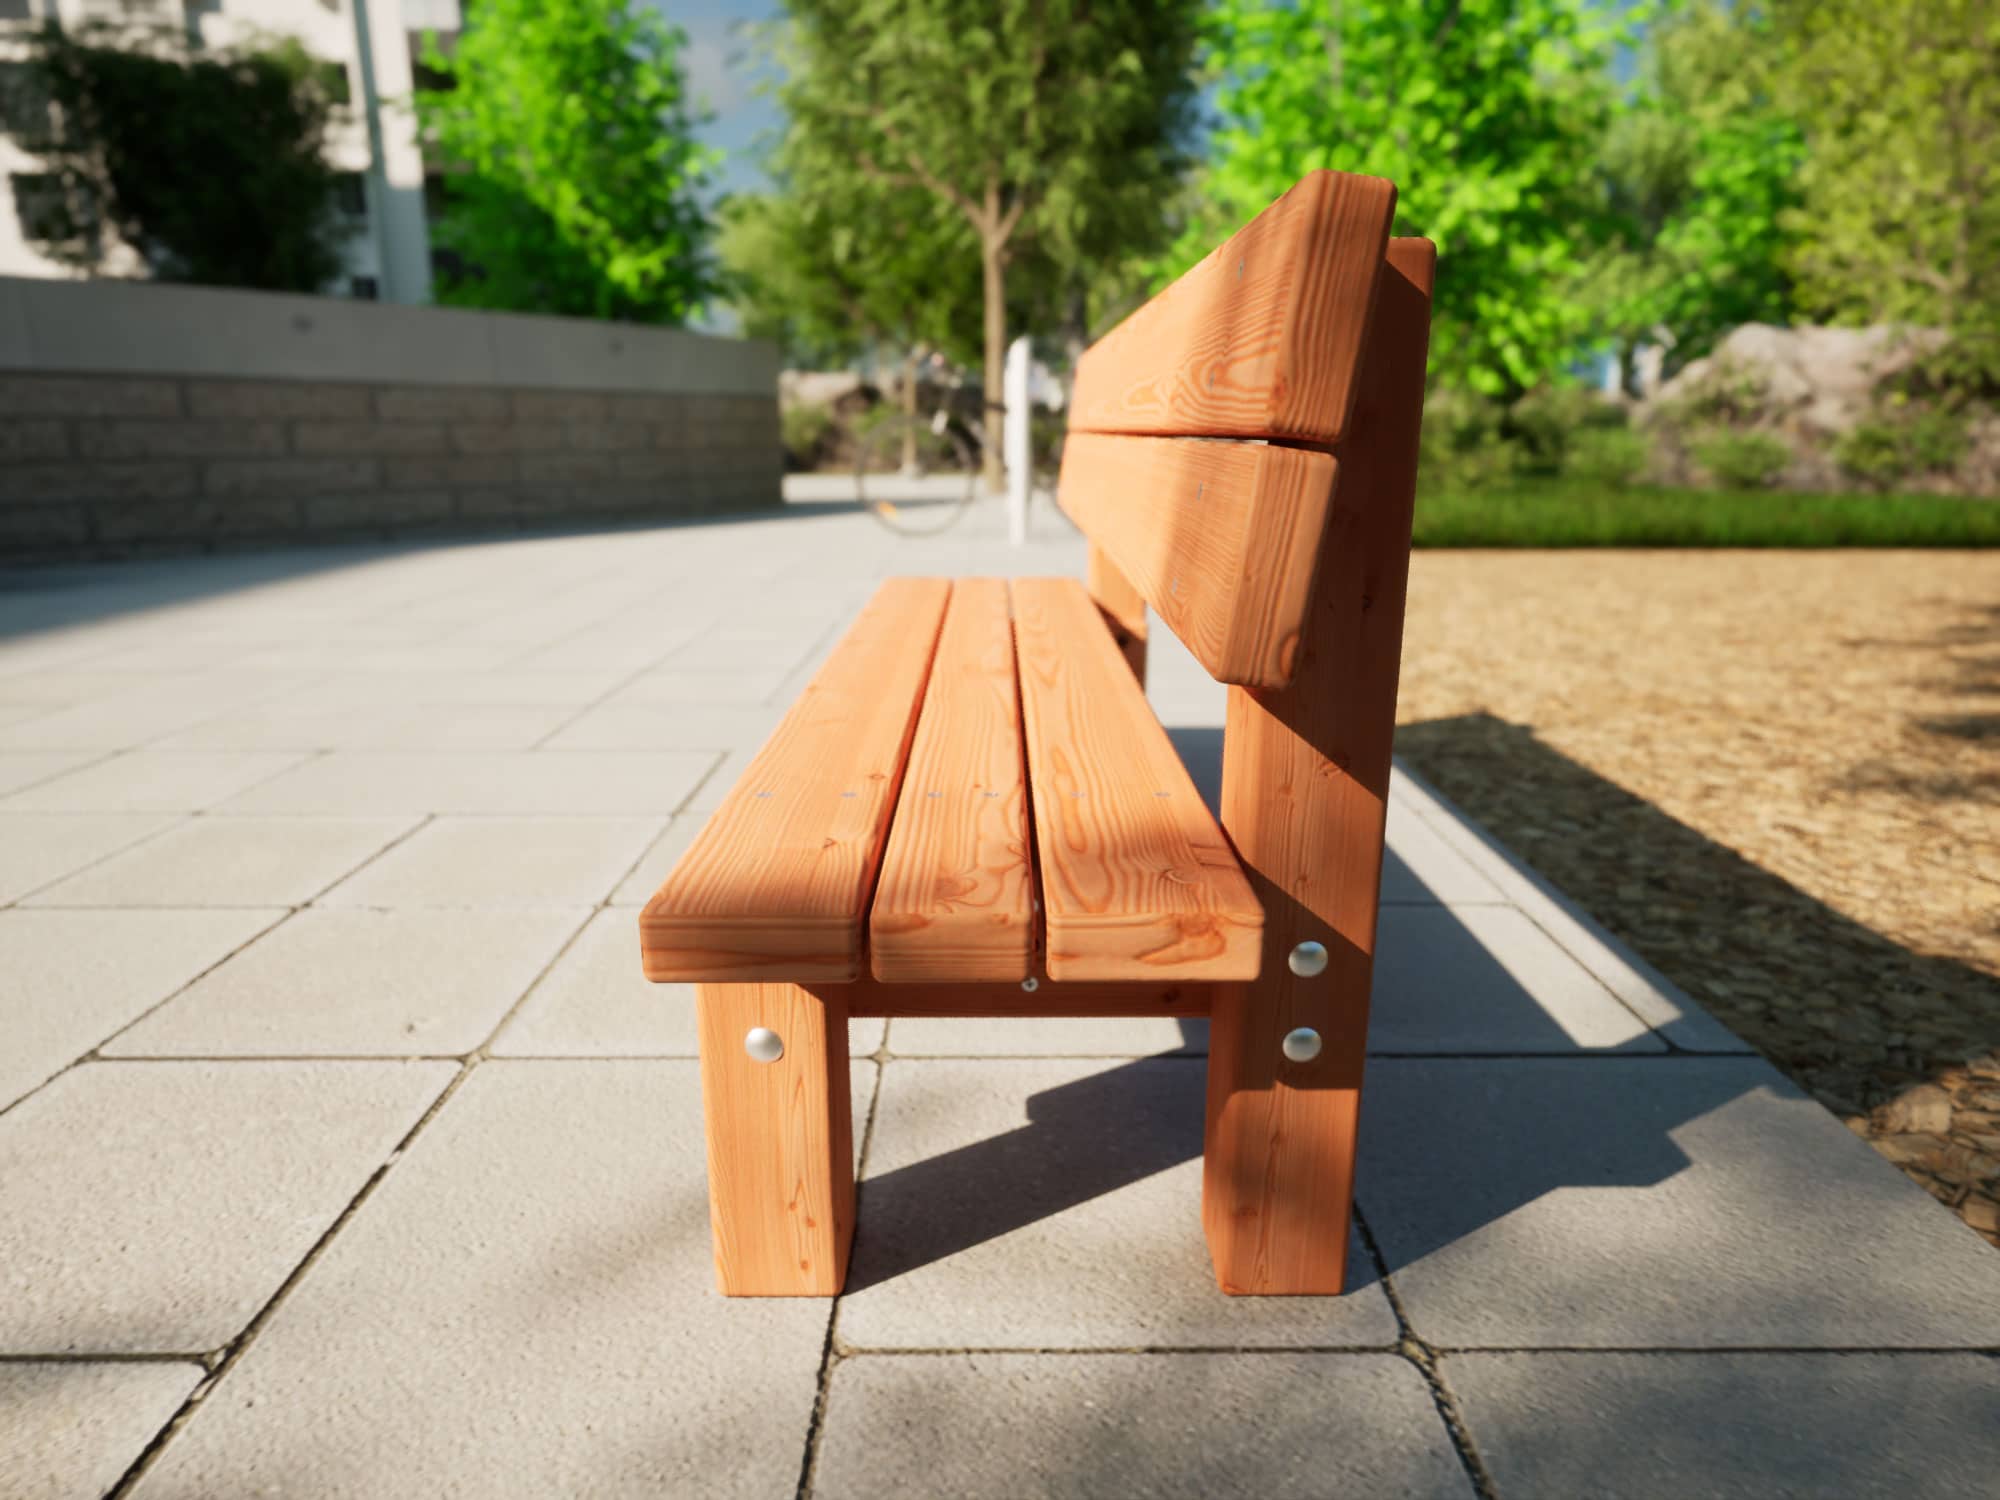 Sitzbank aus Holz für Kinder in einem Park